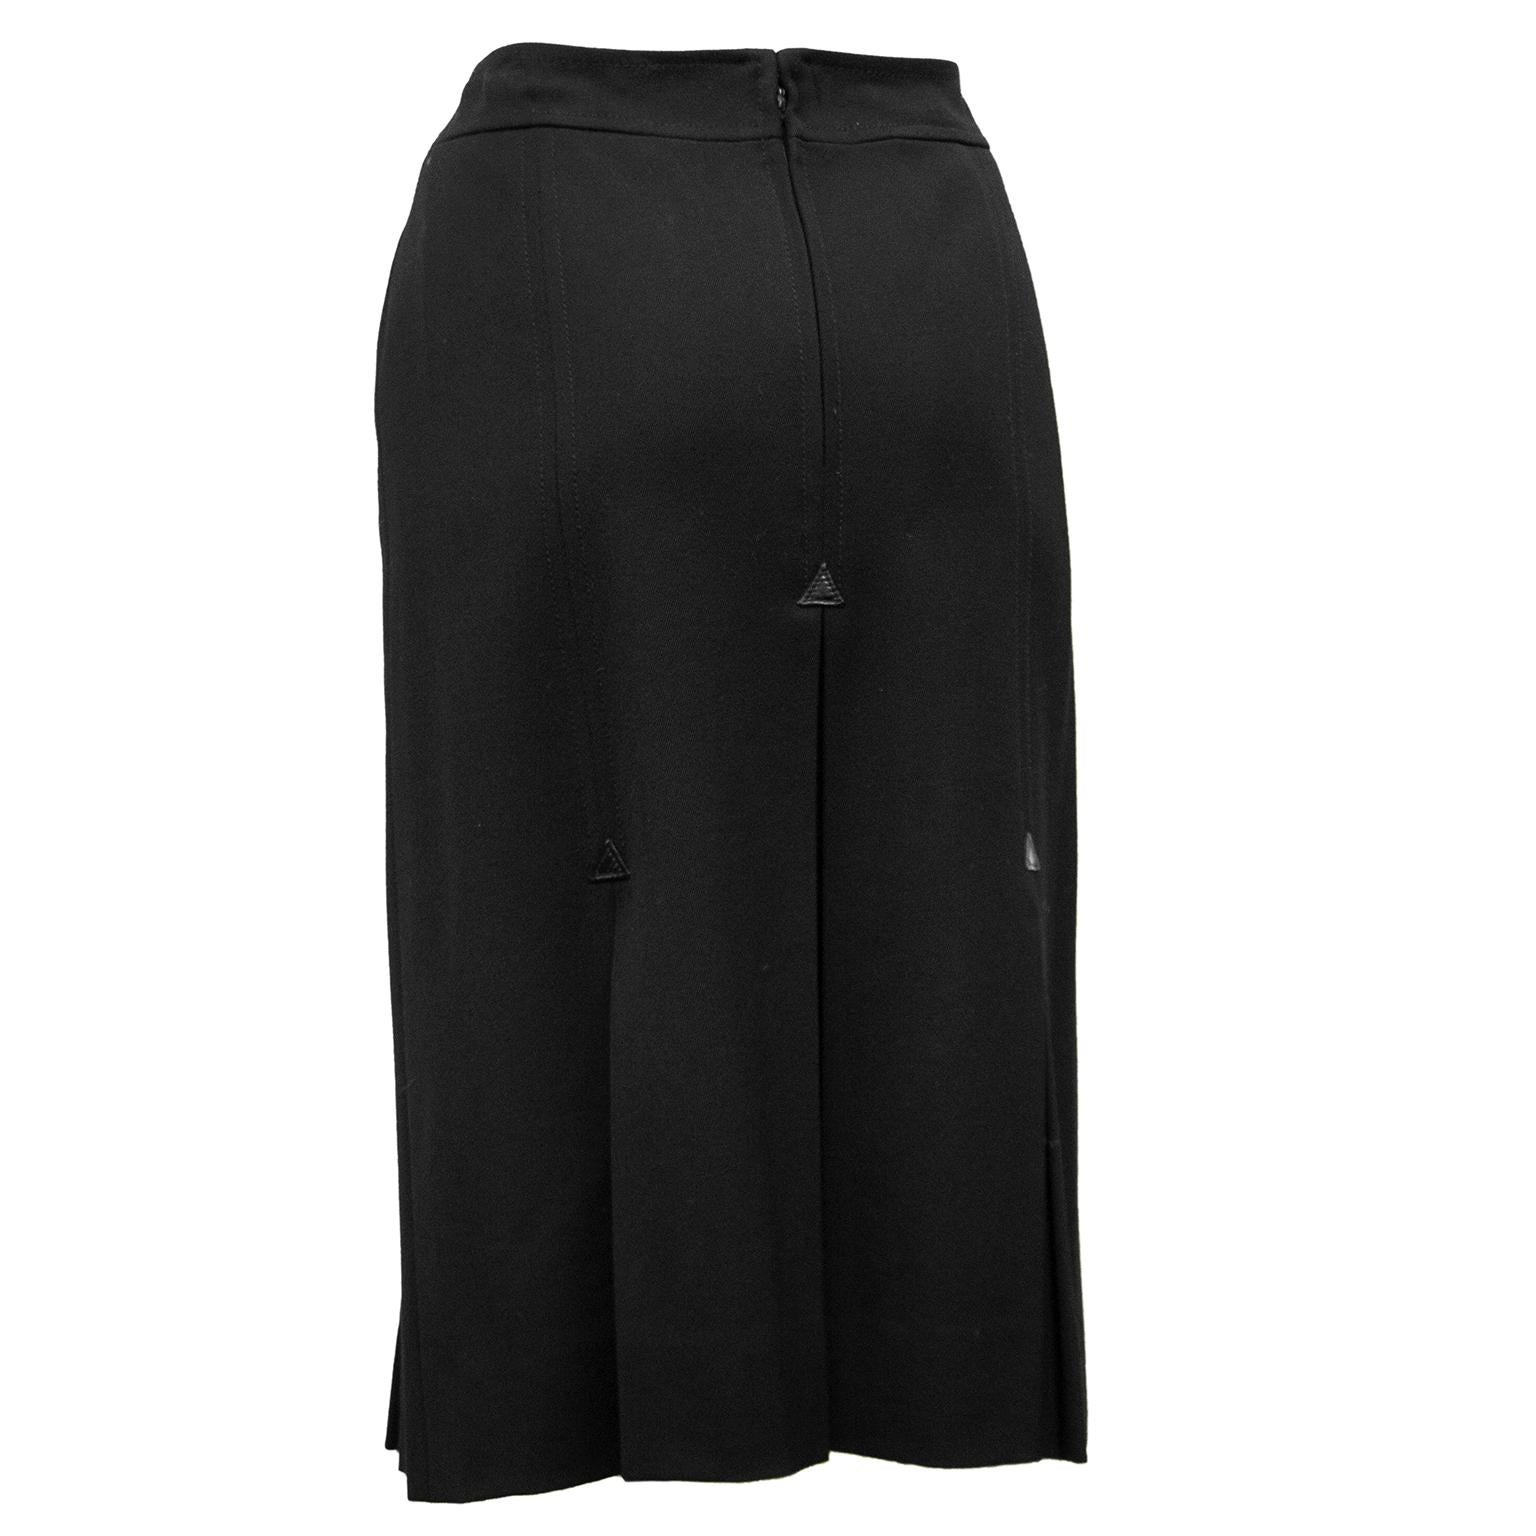 celine black skirt